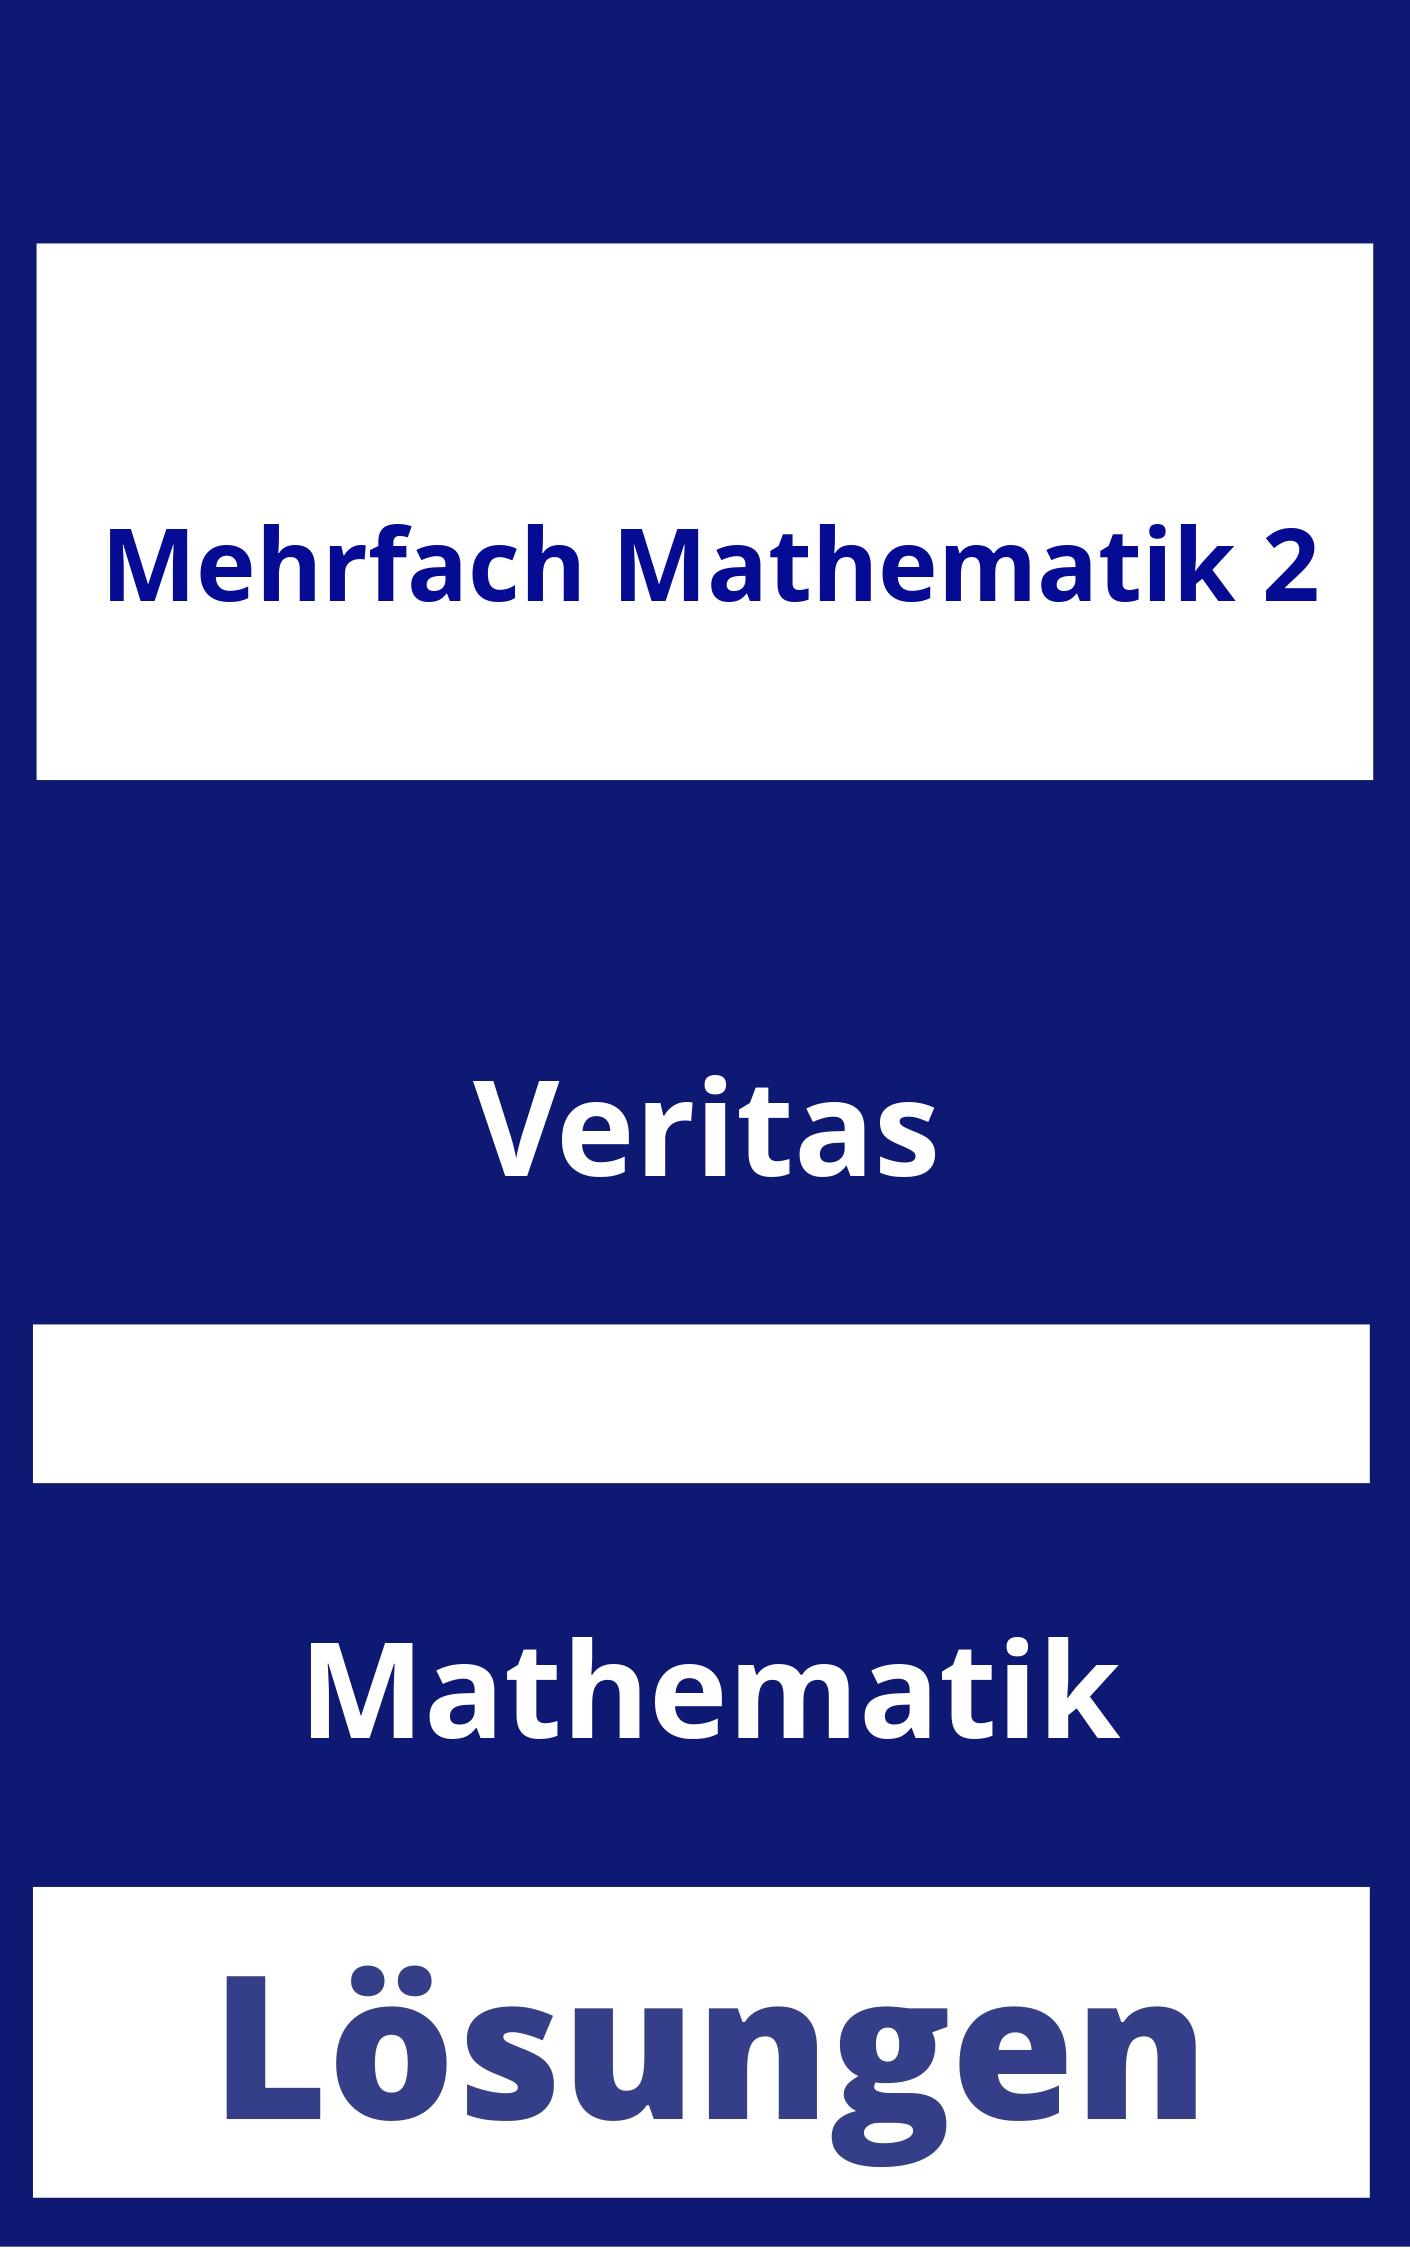 MEHRfach Mathematik 2 Lösungen PDF